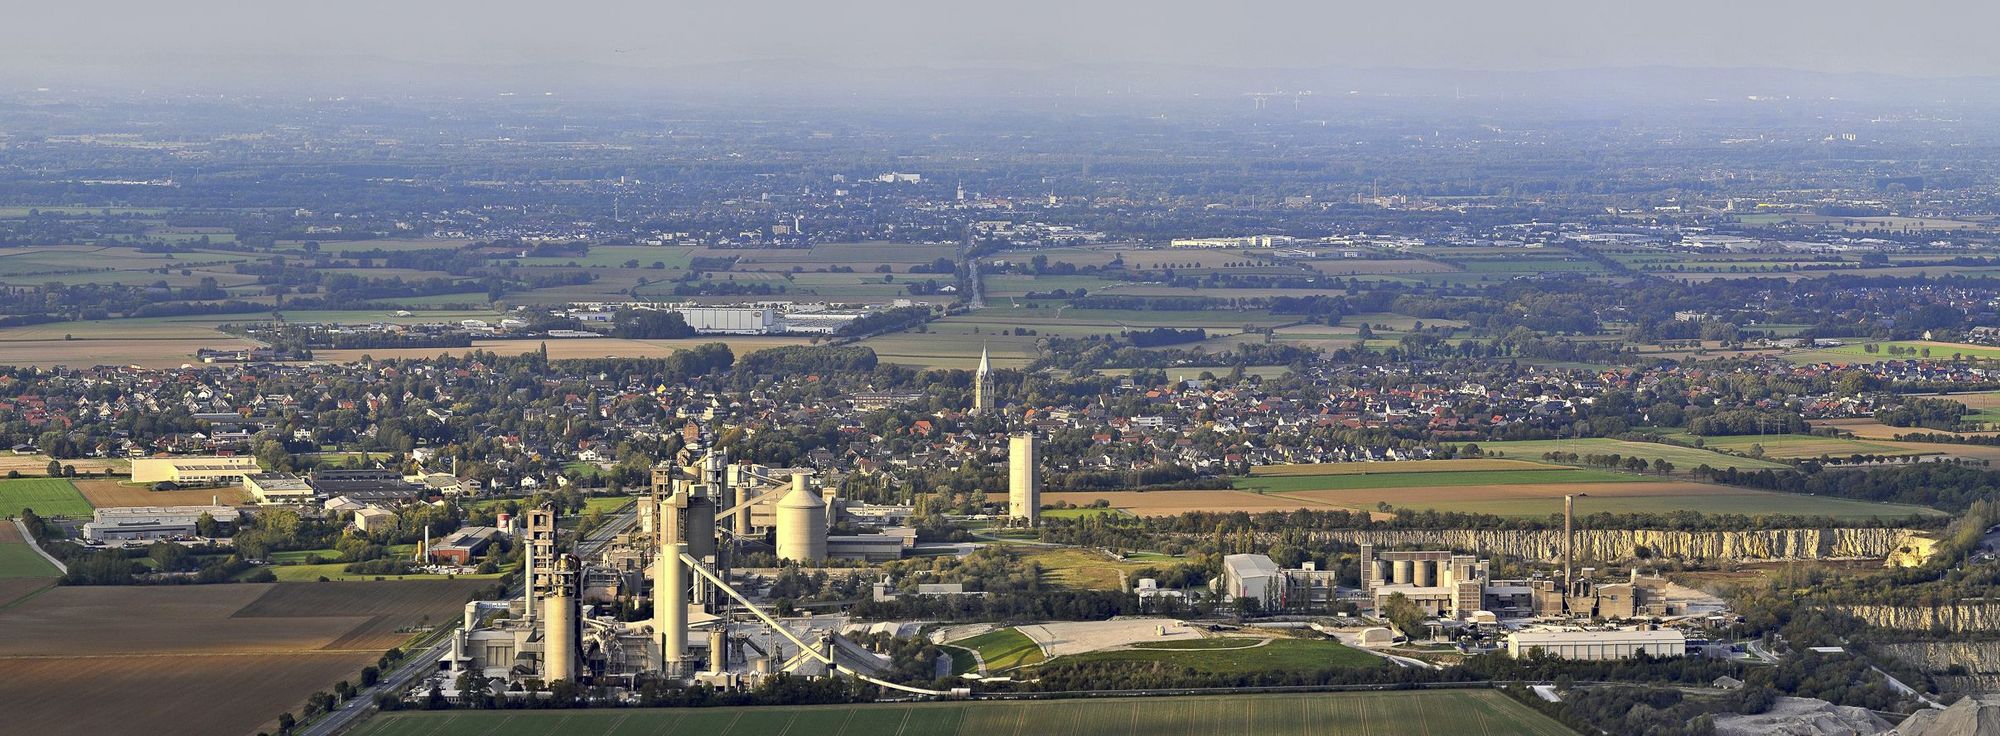 Zementindustrie Erwitte, Foto: T. Rensinghoff Titel